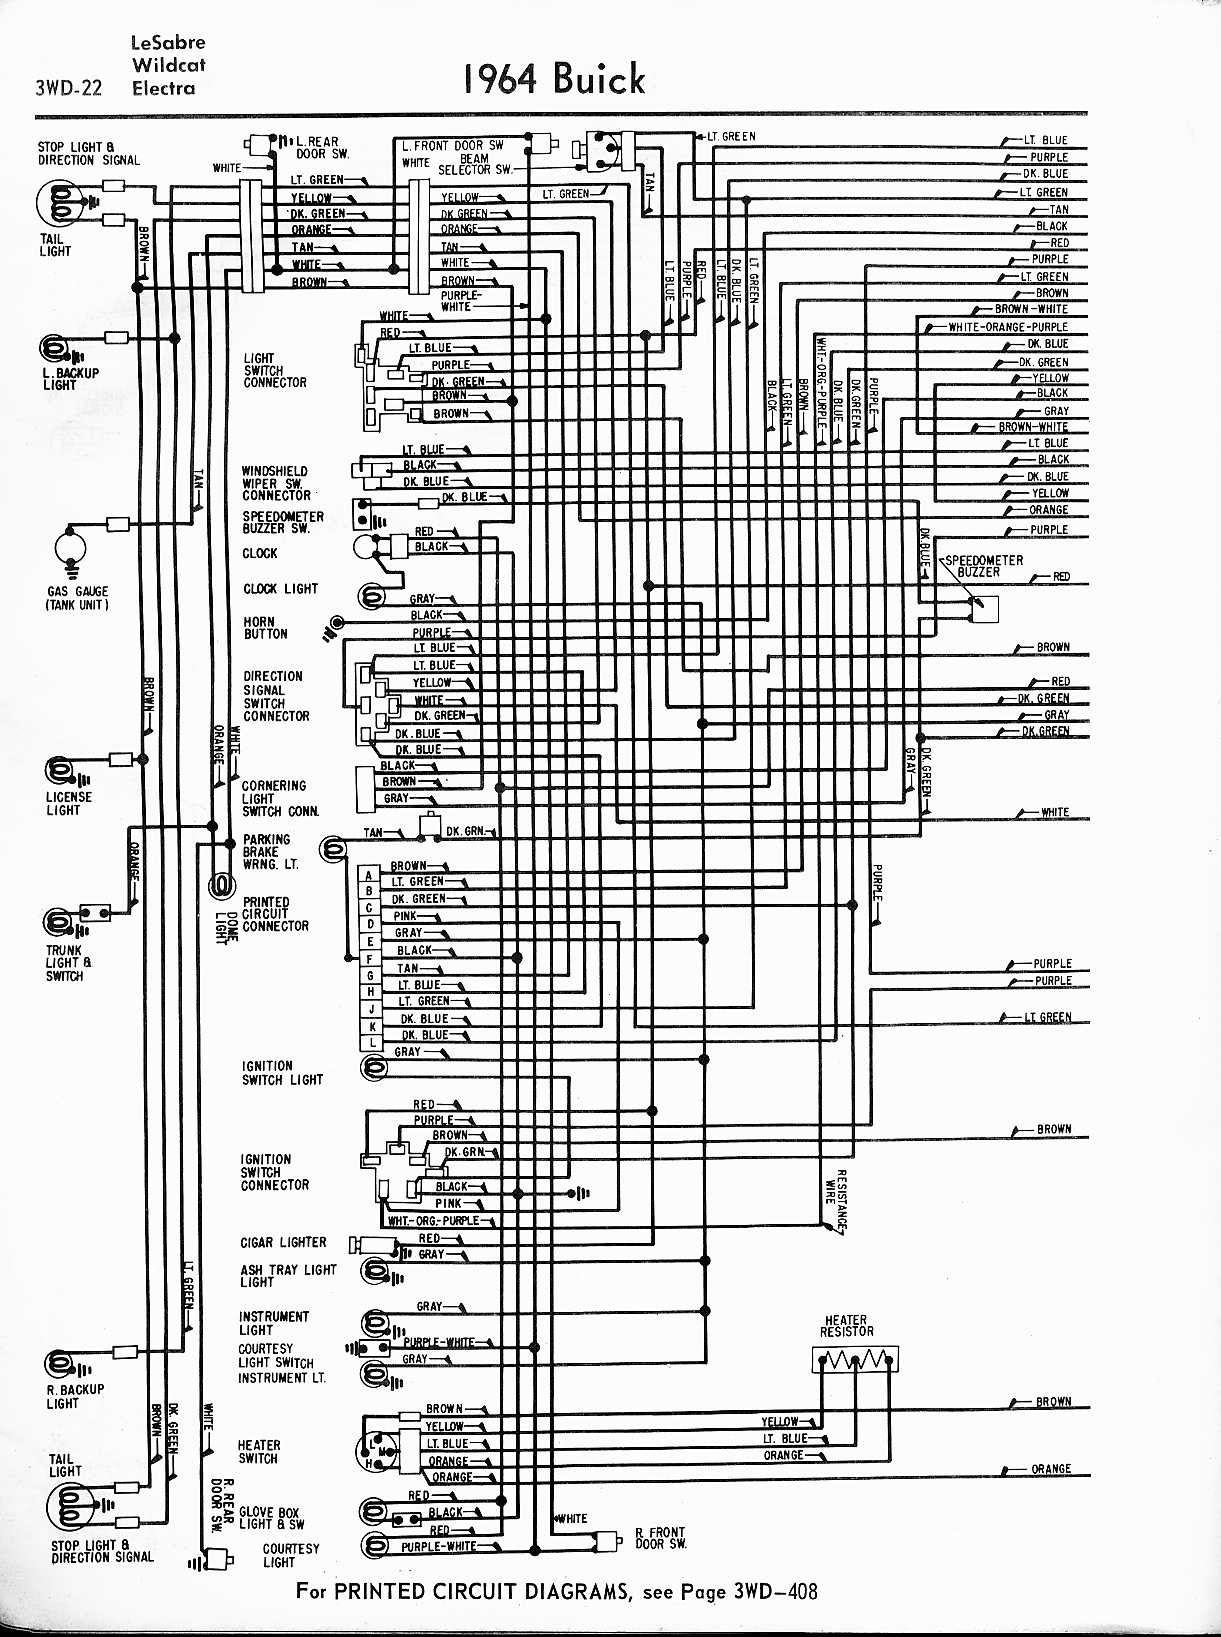 1993 International Wiring Diagram - Wiring Diagram Schema